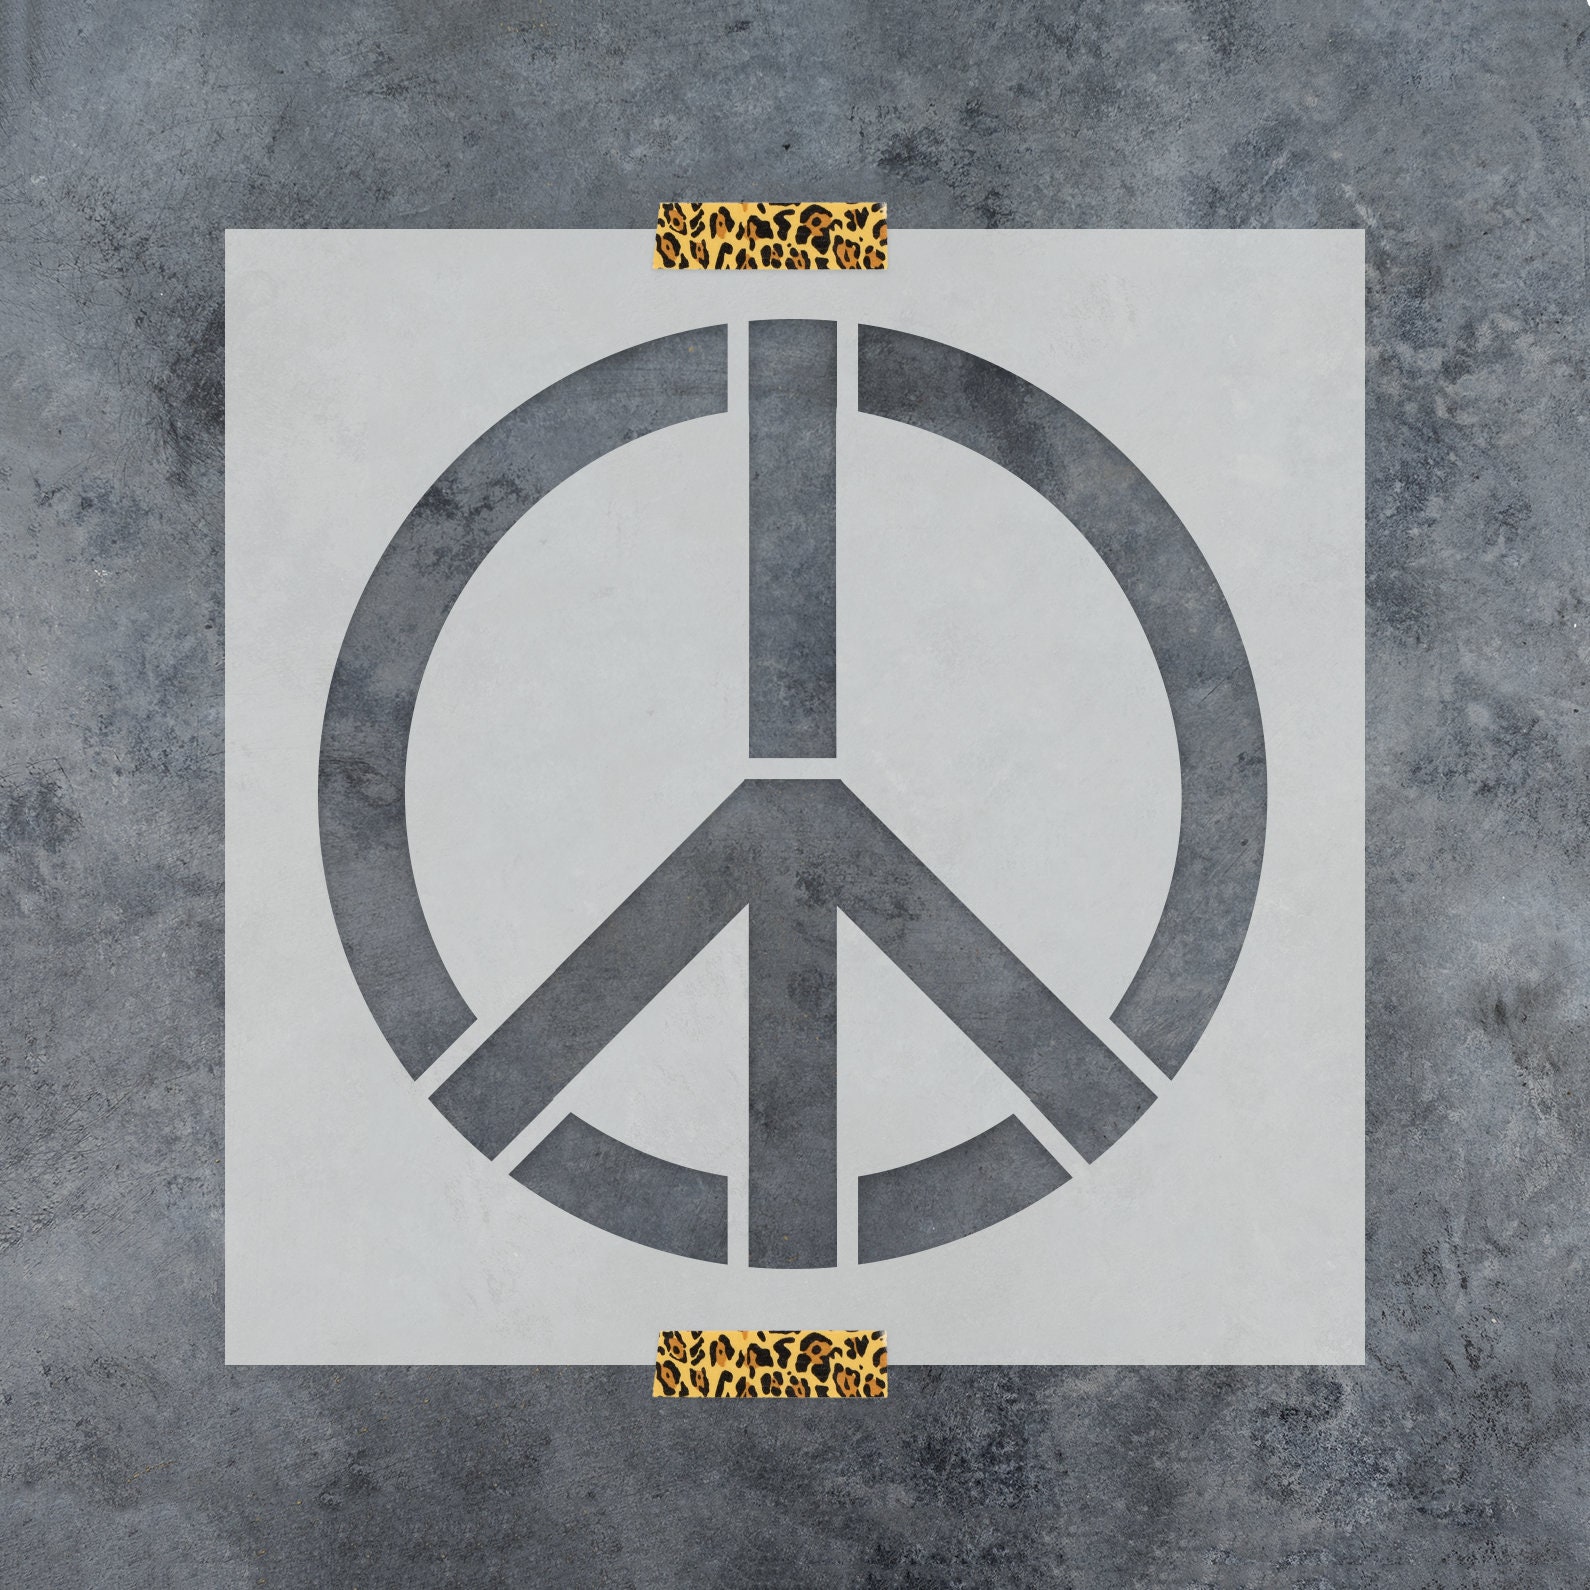 Stencil1 Peace Sign - Stencil 5.75 x 6